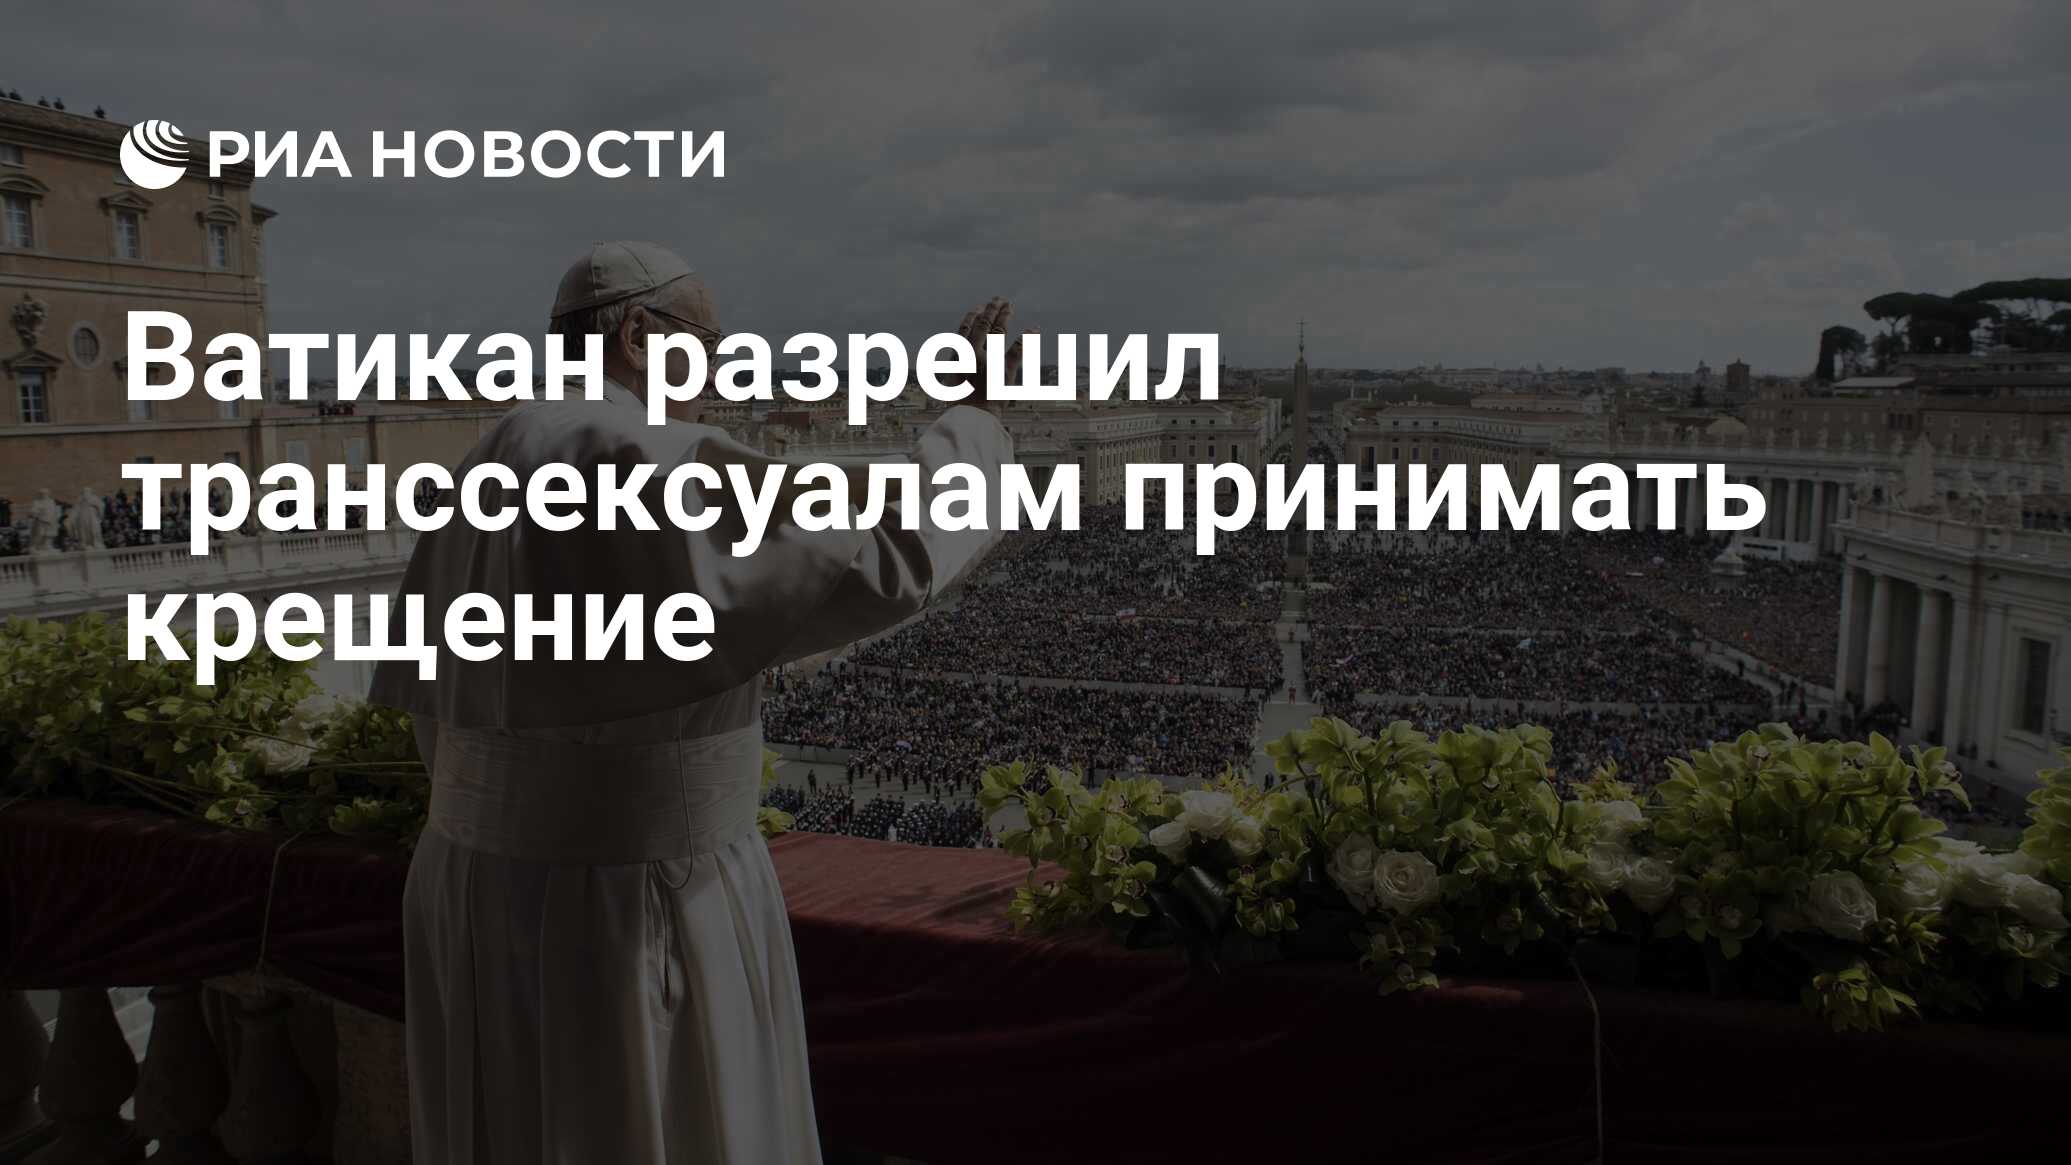 Дума приняла закон о запрете смены пола в России